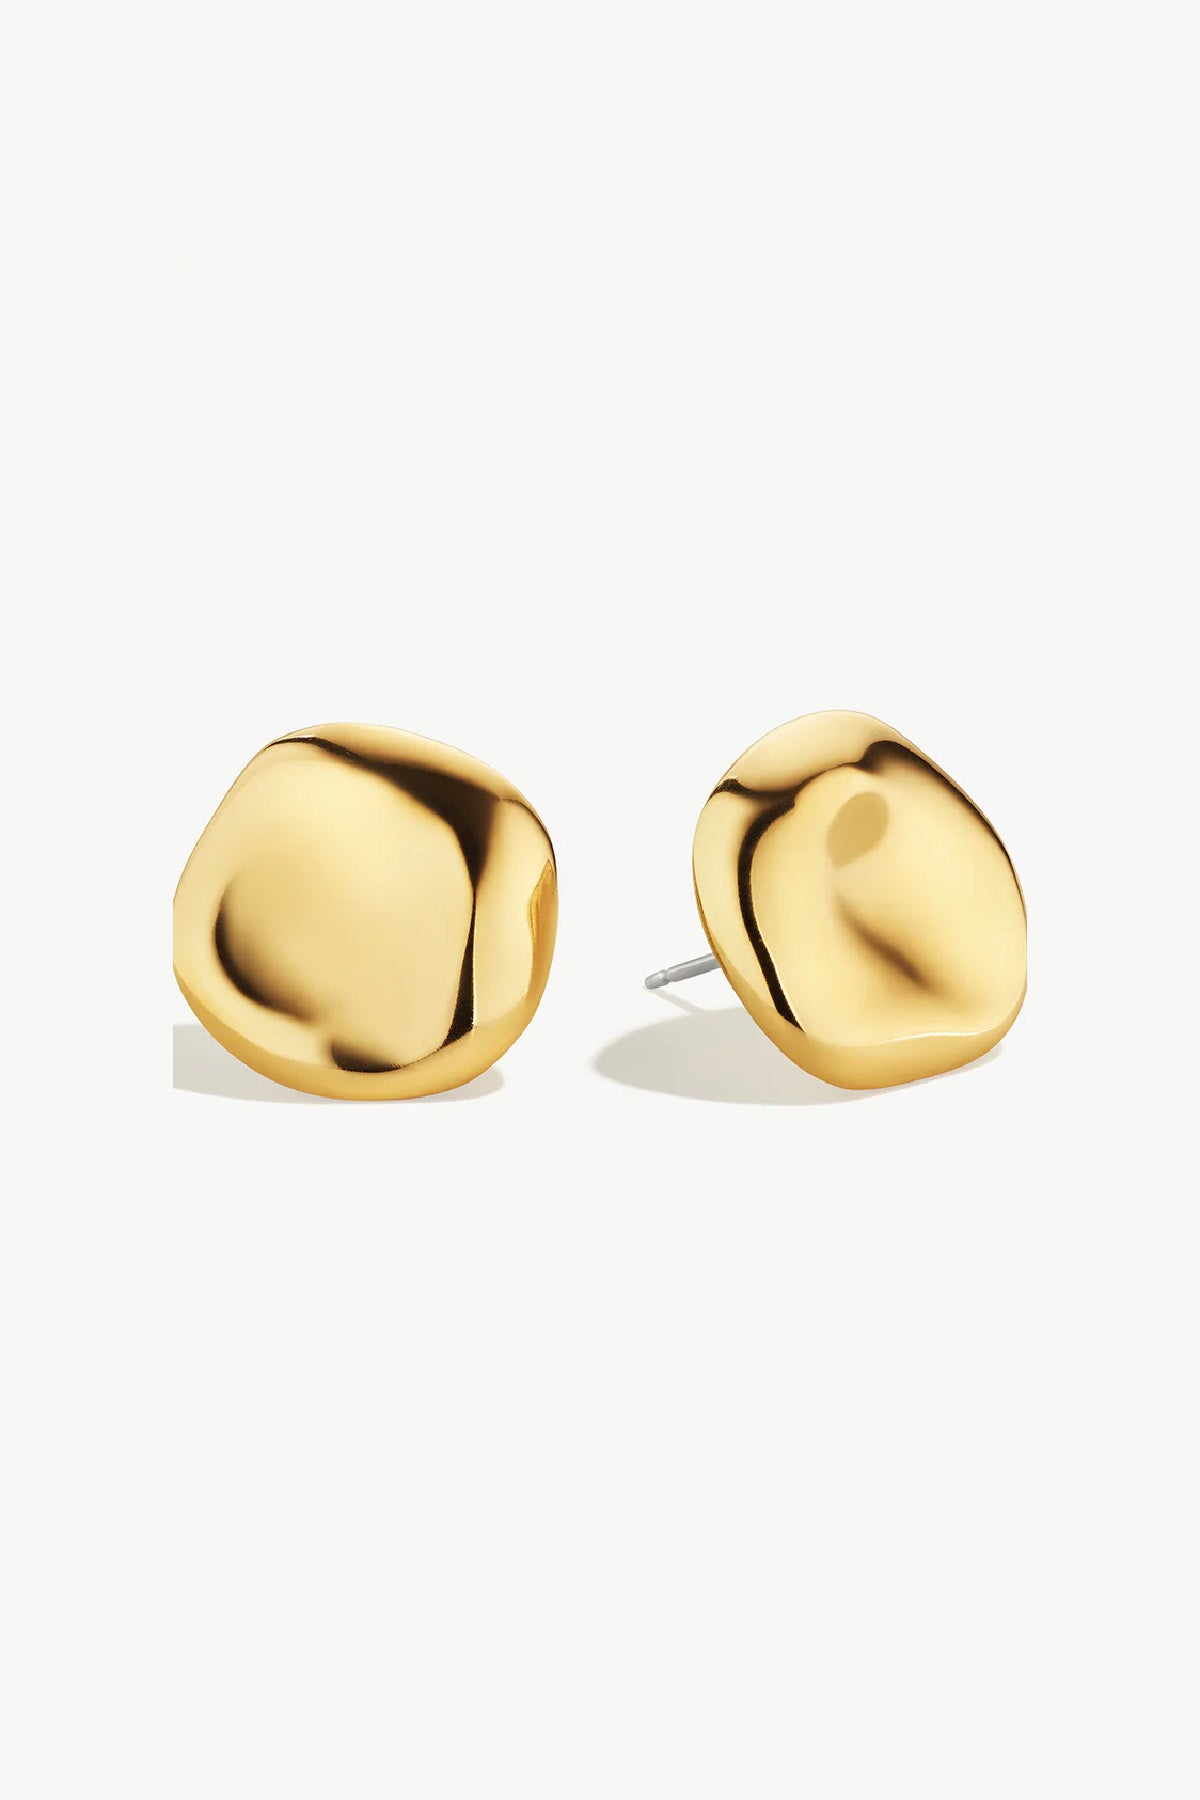 Bahari Stud Earrings - Gold